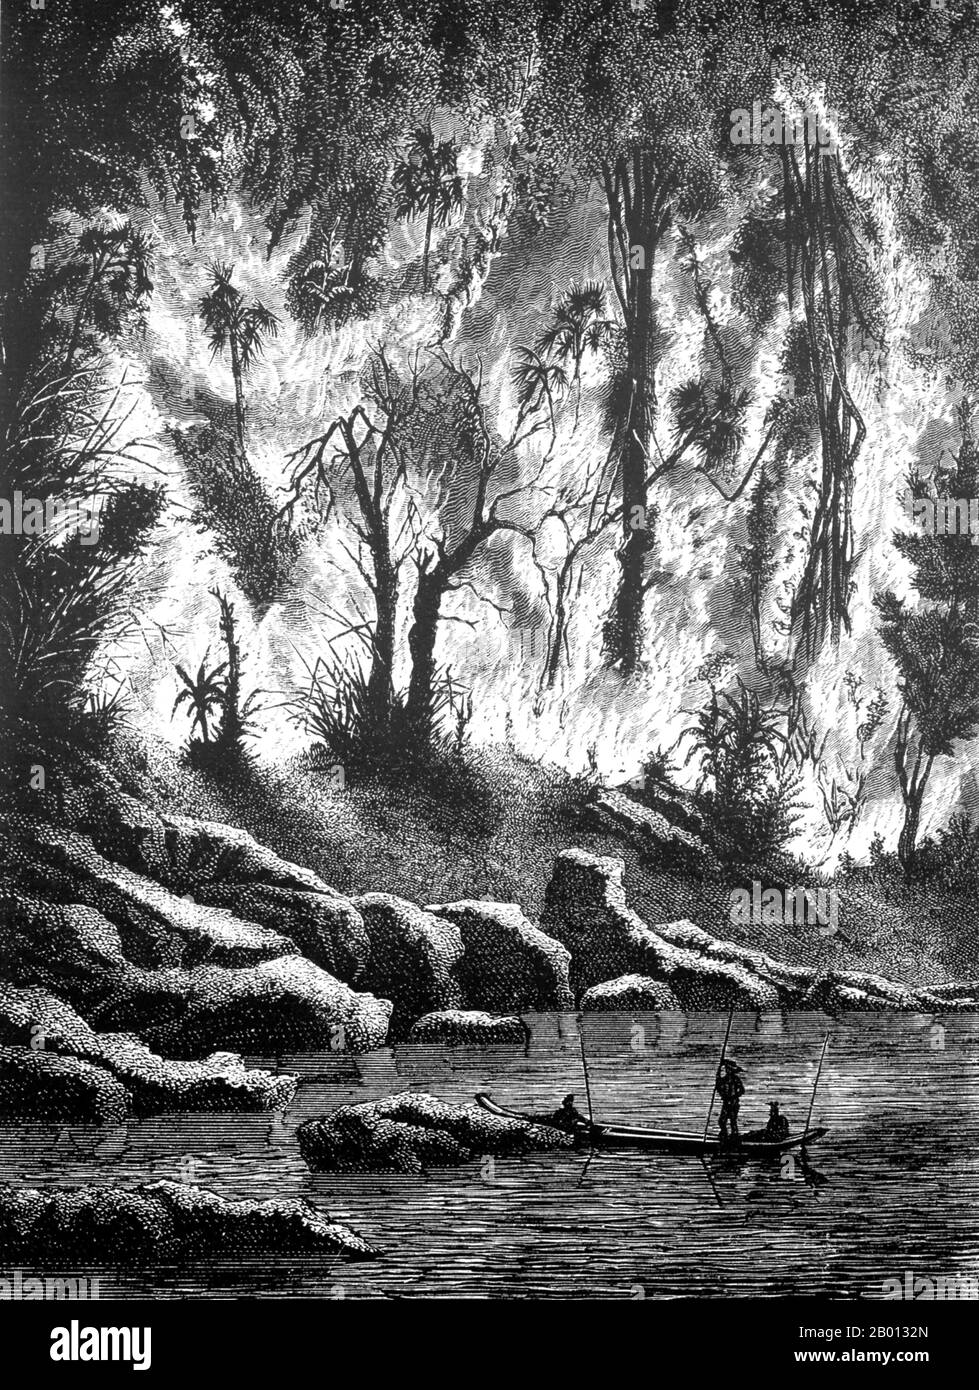 Thaïlande/Laos: Un feu de forêt sur les rives du fleuve Mun, affluent du Mékong. Gravure de Louis Delaporte (1842-1925), 1867. Cette illustration de Louis Delaporte est l'une des douzaines qu'il a produites au cours de son aventure de deux ans (1866-68) avec la Commission d'exploration du Mékong parrainée par le ministère français de la Marine, dont l'intention était de jeter les bases de l'expansion des colonies françaises en Indochine. En voyageant sur le Mékong en bateau, la petite délégation française a voyagé de Saigon à Phnom Penh à Luang Prabang, puis plus au nord dans le Haut-Laos et la province chinoise du Yunnan. Banque D'Images